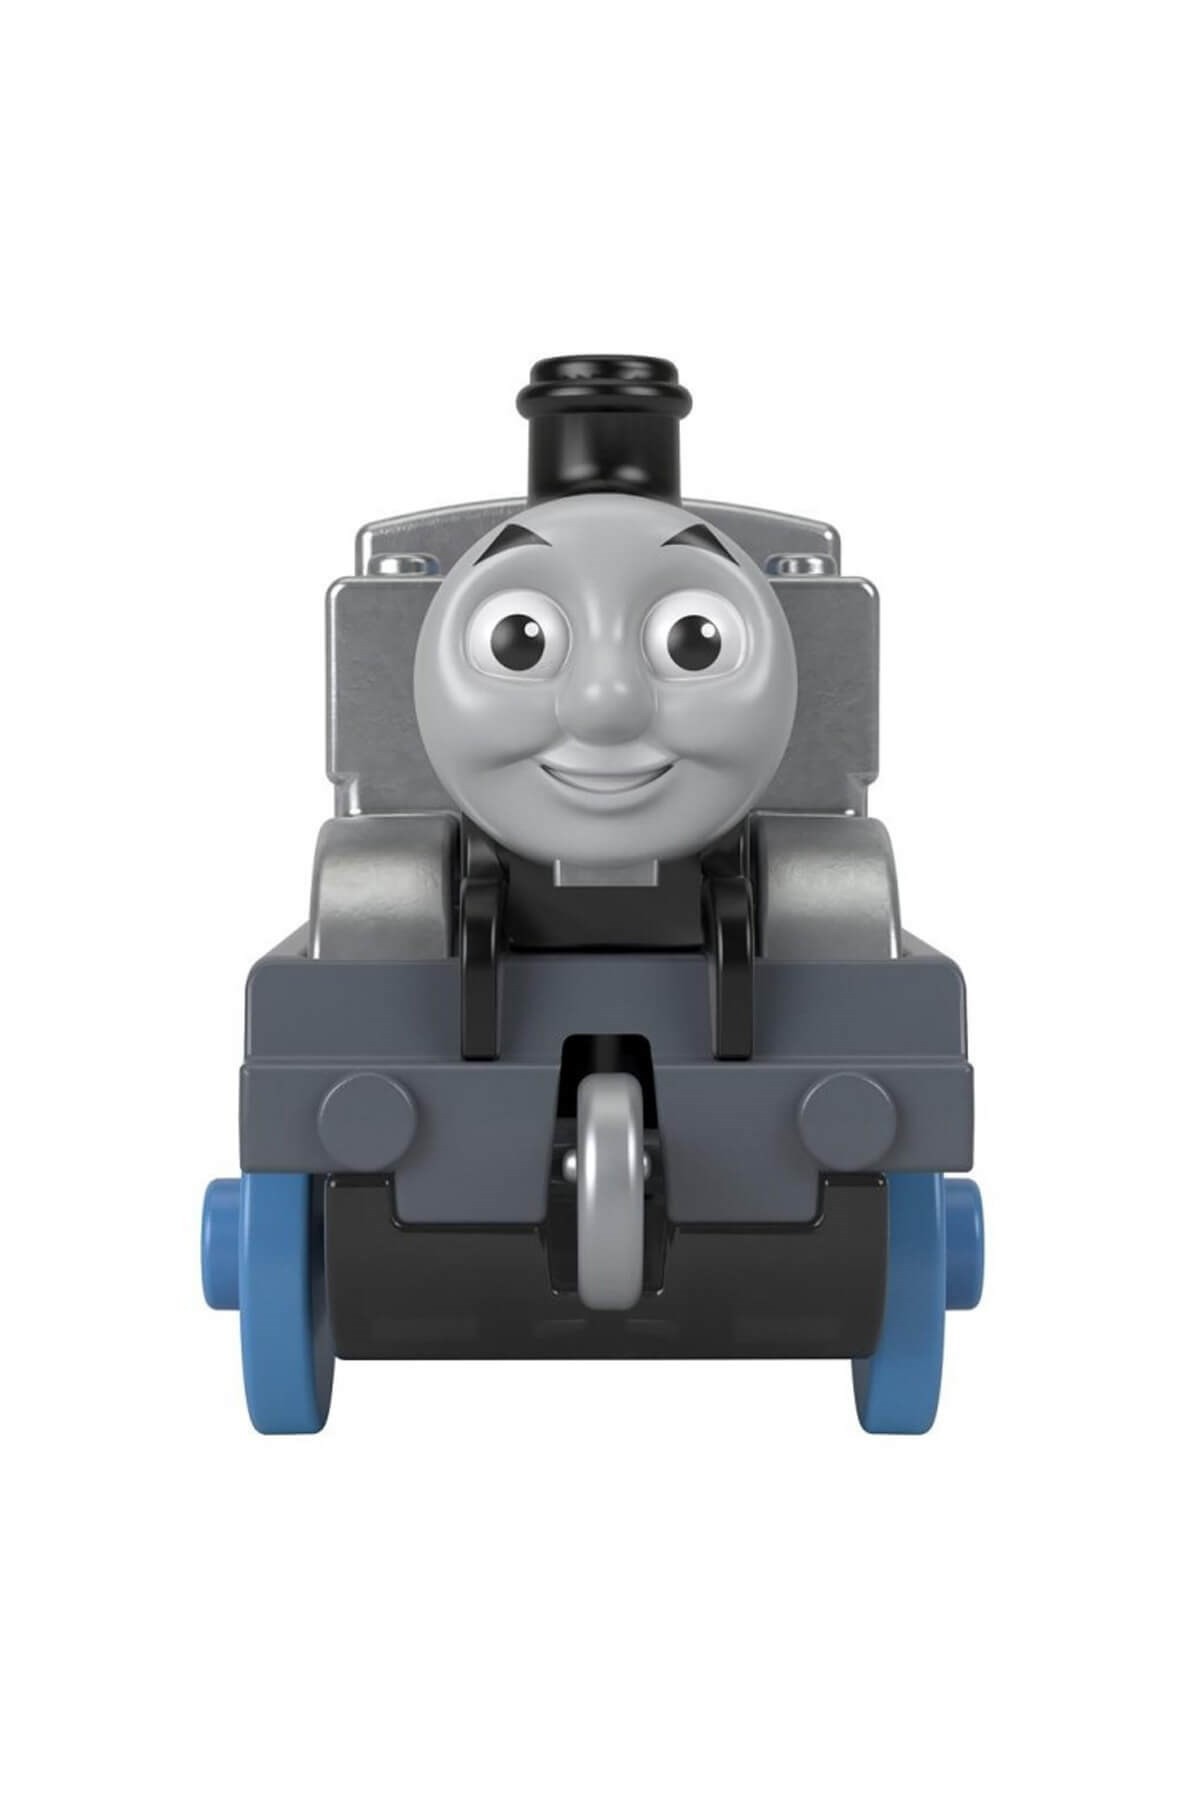 Thomas ve Arkadaşları Trackmaster Sür Bırak Küçük Tekli Trenler Thomas GYV68